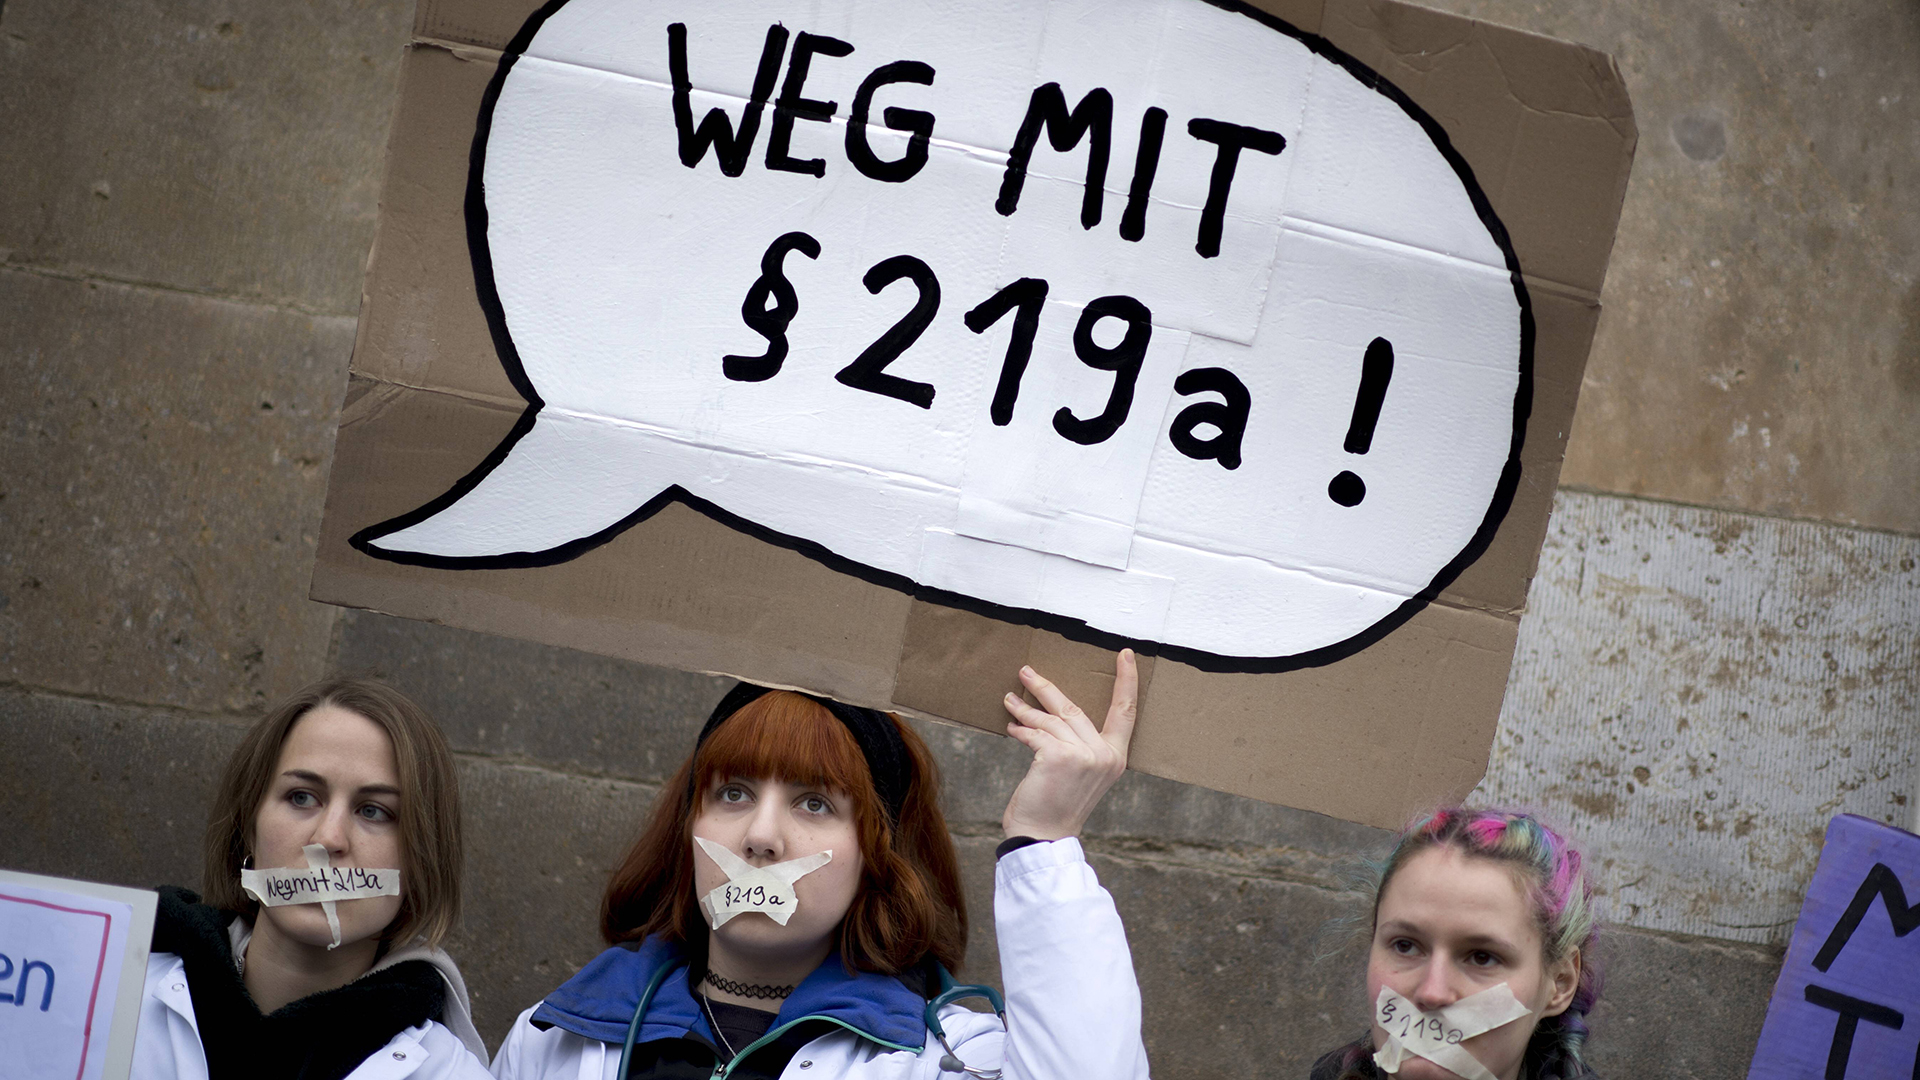 Eine Frau mit einem Plakat "Weg mit 219a" und zugeklebten Mund auf einer Kundgebung. | imago/IPON